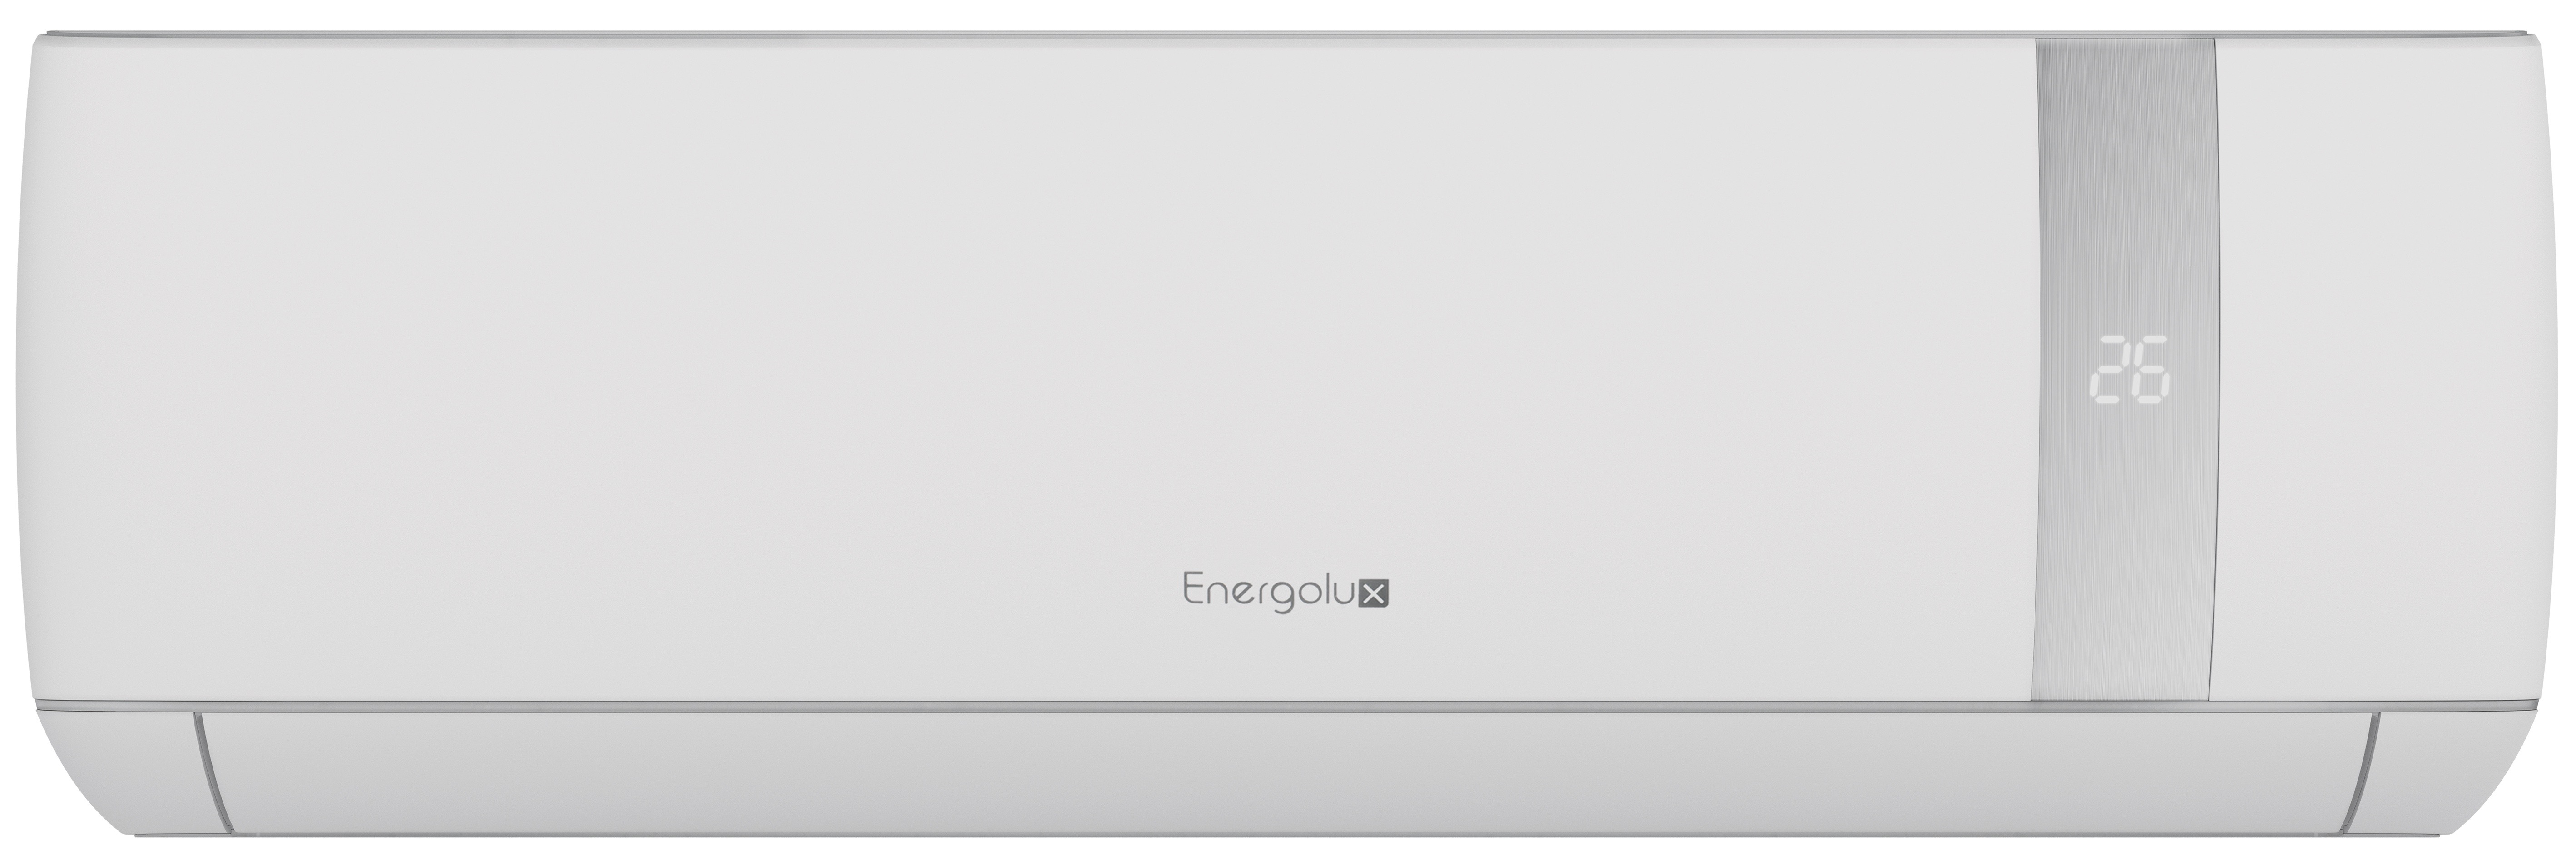 1. Energolux сплит-система настенный SAS12BN1-AI (серия Bern)